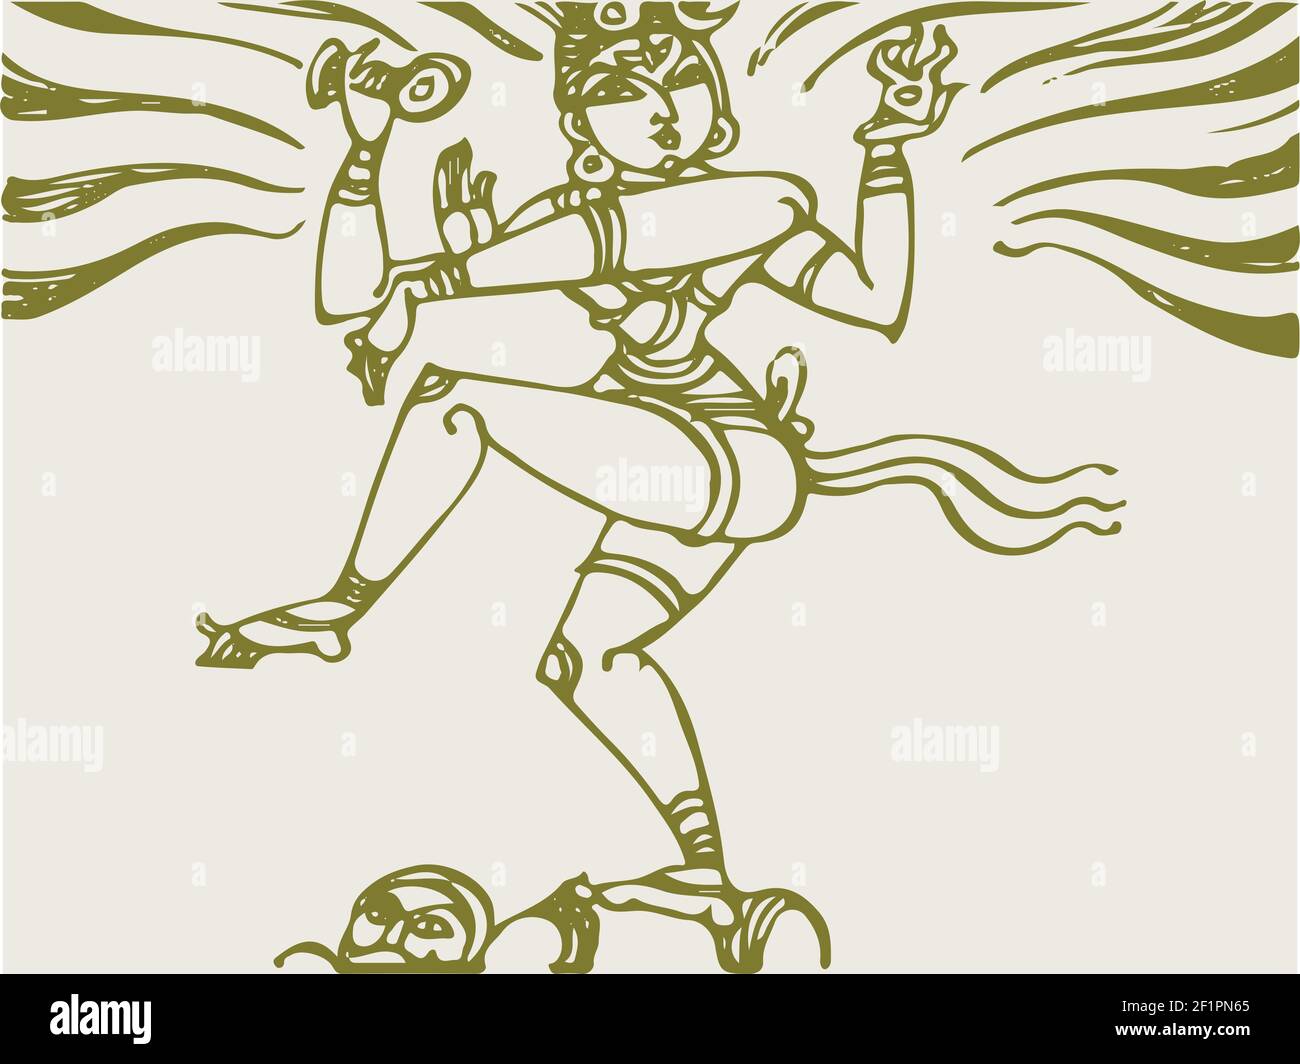 Un bel disegno di Lord Shiva e Parvati Foto Stock